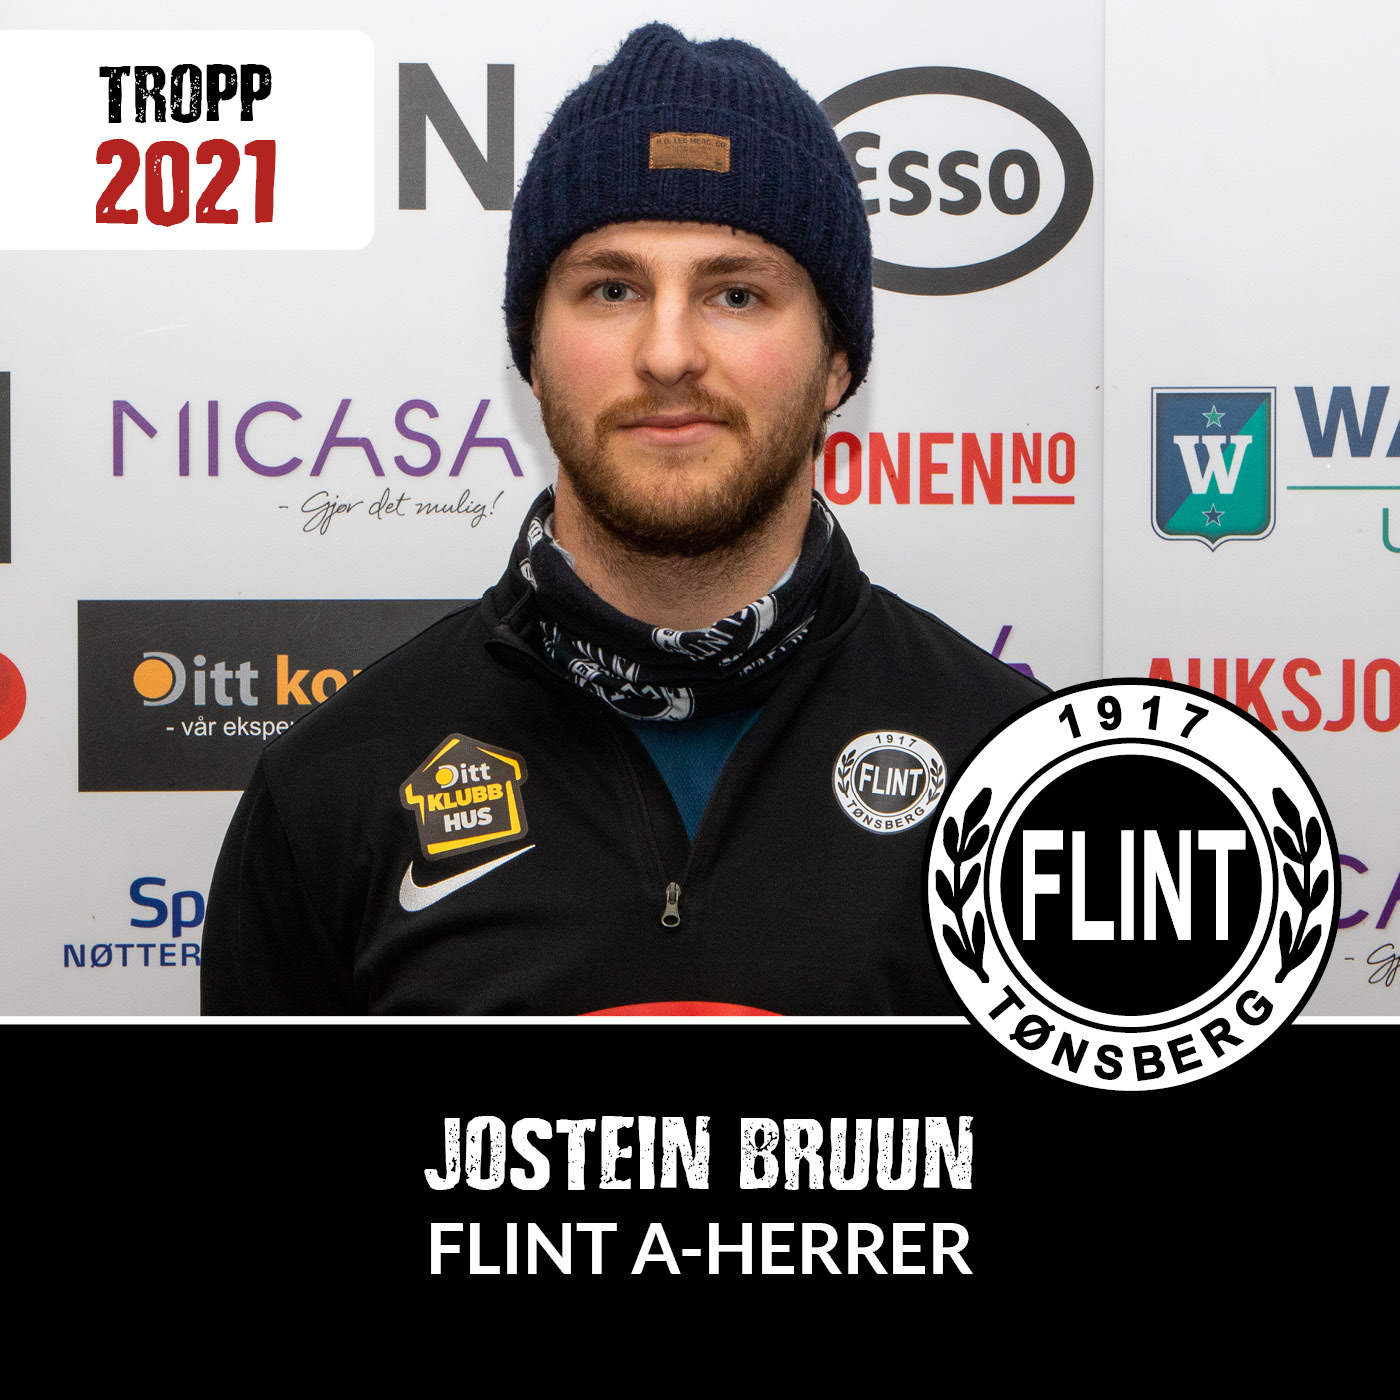 https://www.flintfotball.no/wp-content/uploads/2020/12/A-herrer-2021-Jostein-Bruun-.jpg